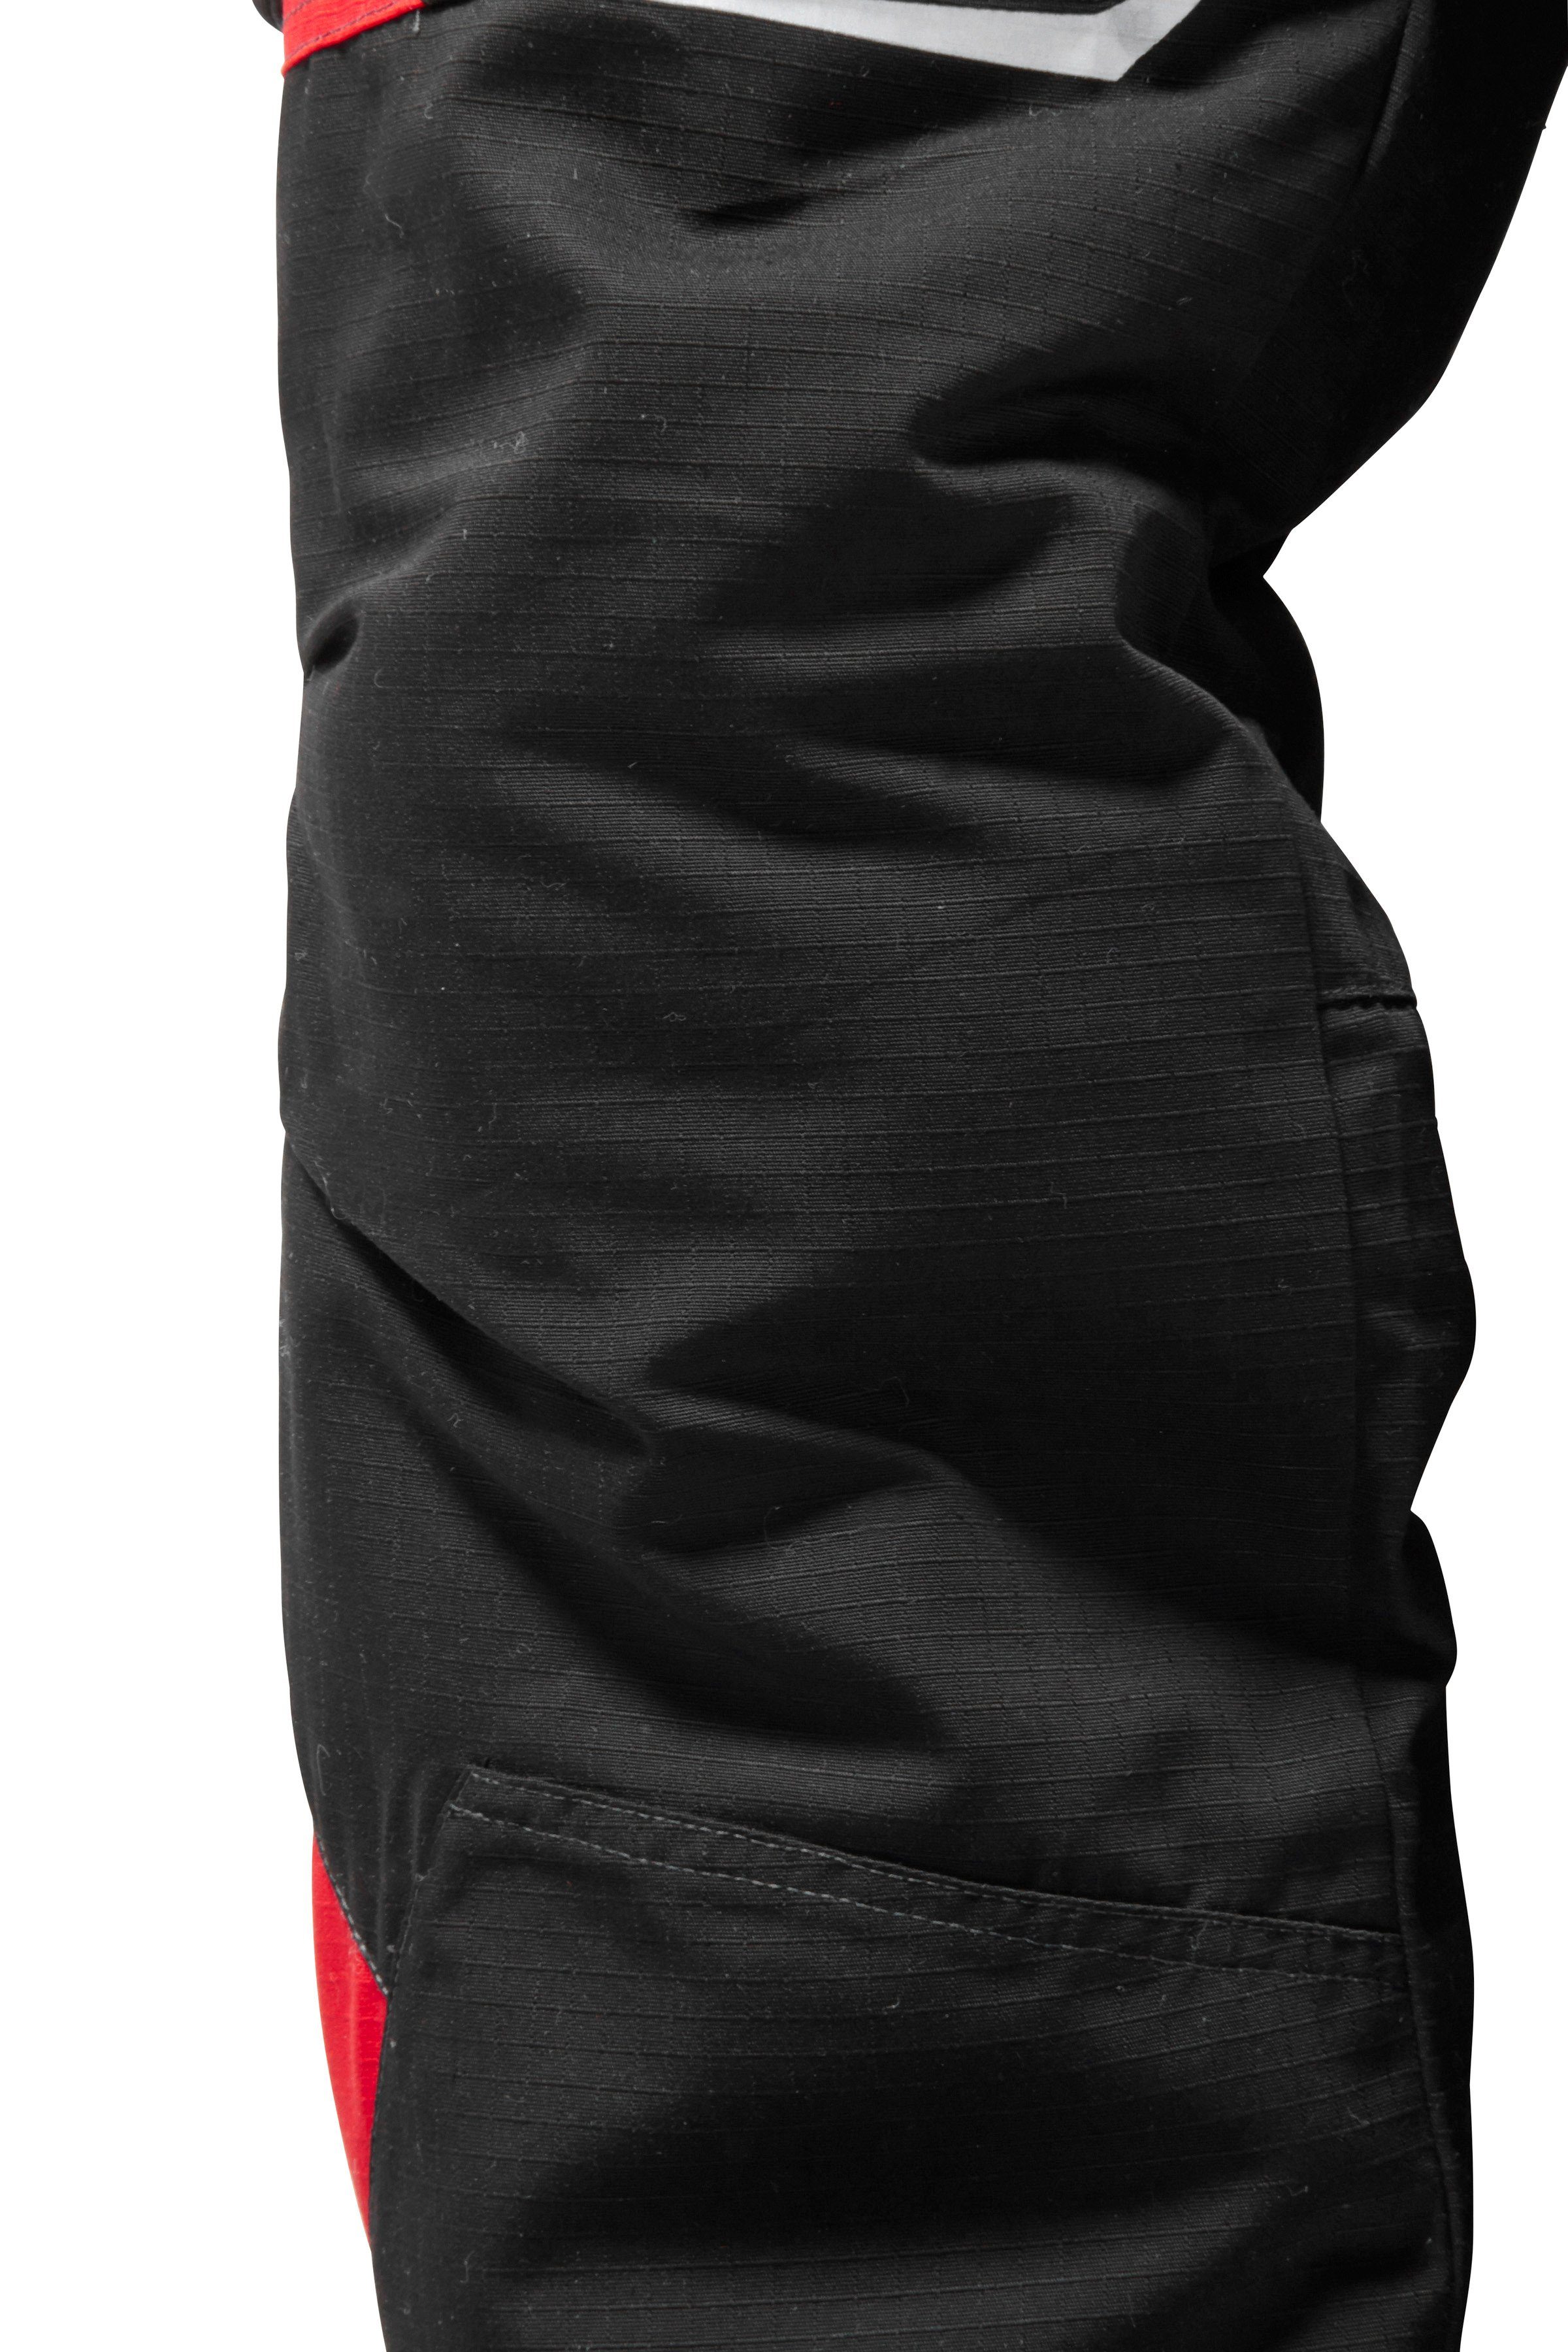 Kübler Arbeitshose rot-schwarz Verstärkungen mit CORDURA® Pulsschlag